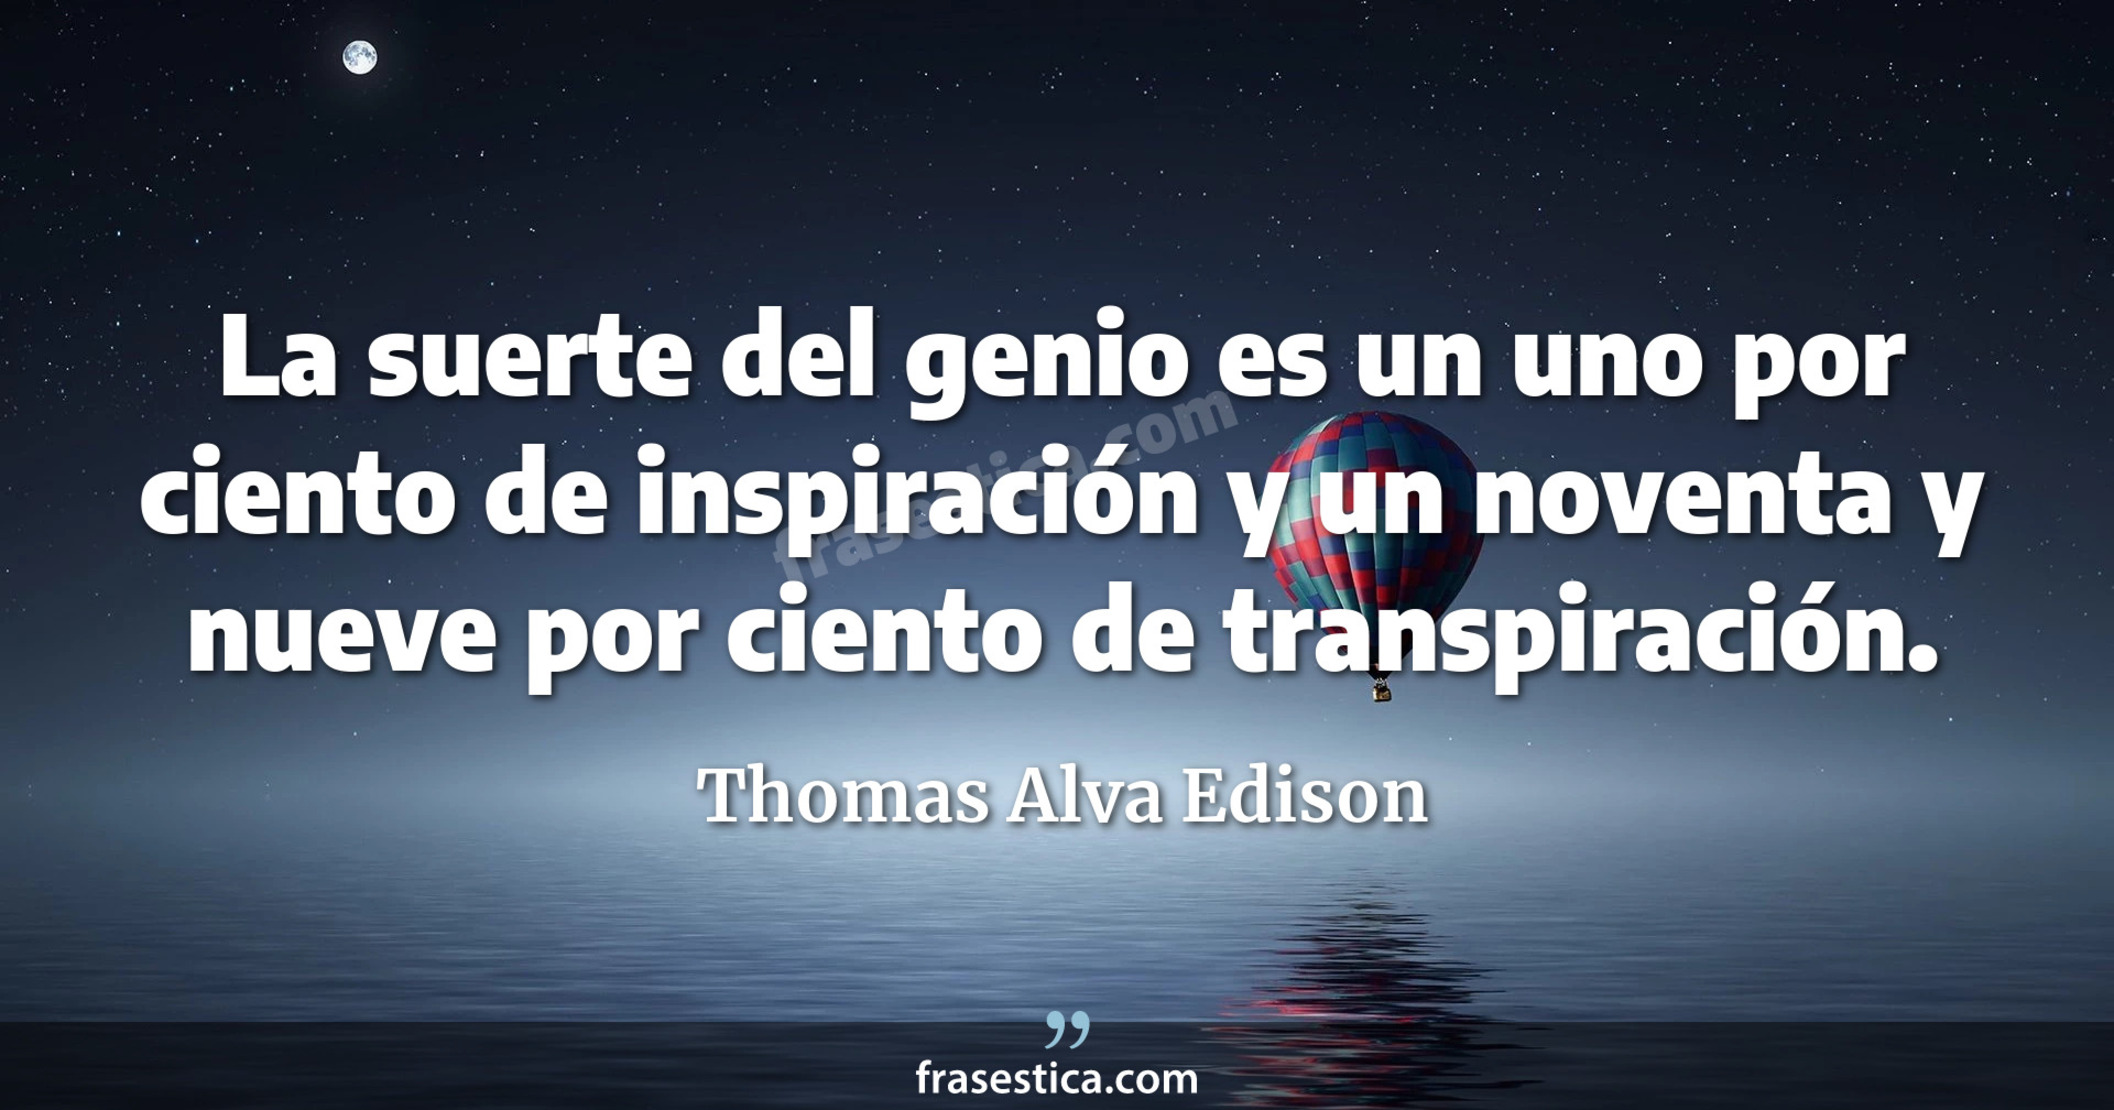 La suerte del genio es un uno por ciento de inspiración y un noventa y nueve por ciento de transpiración. - Thomas Alva Edison